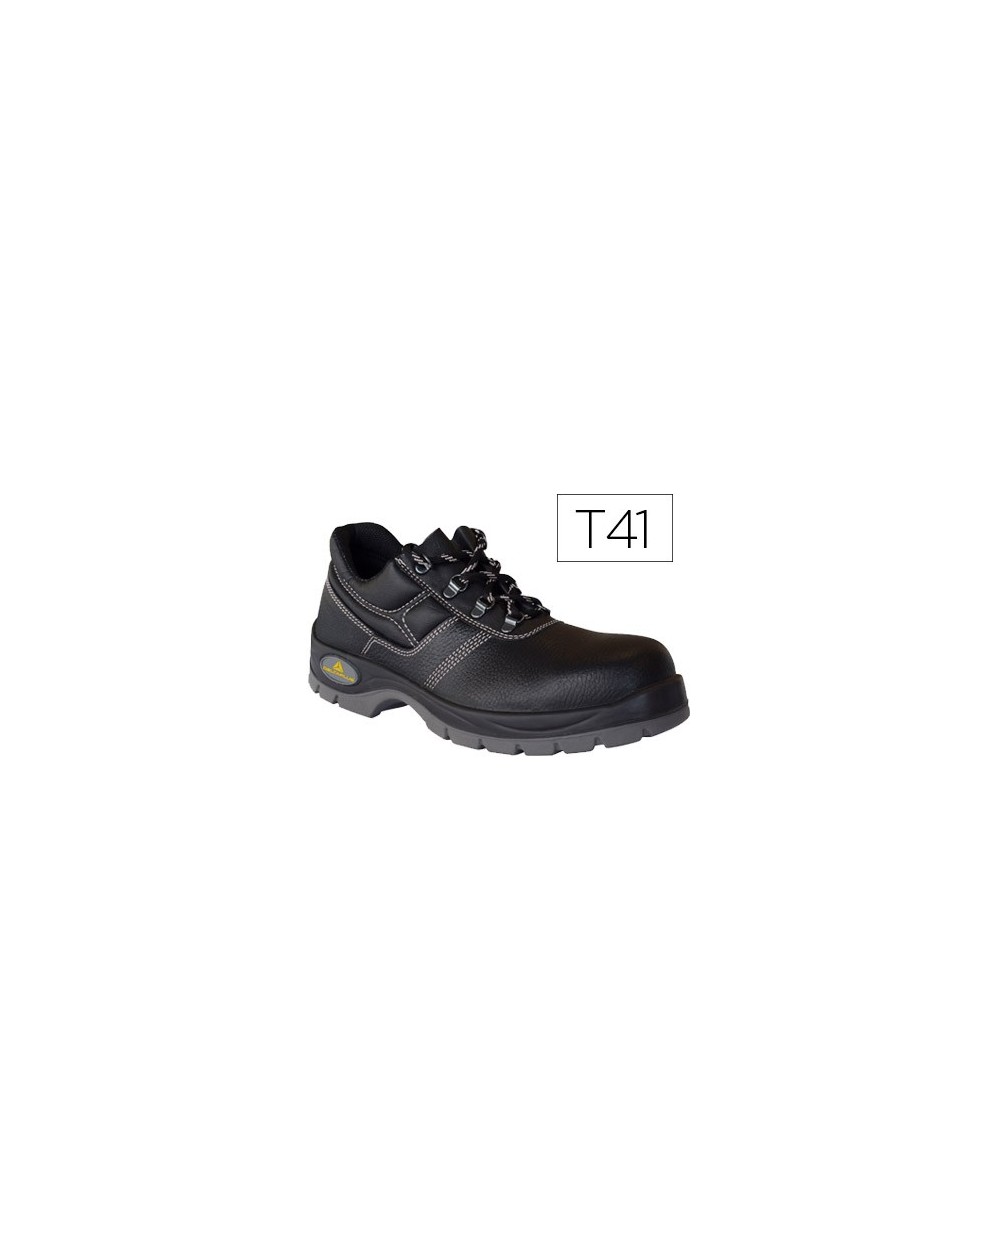 Zapatos de seguridad deltaplus de piel crupon grabada con forro absorbente y plantilla de latex color negro talla 41